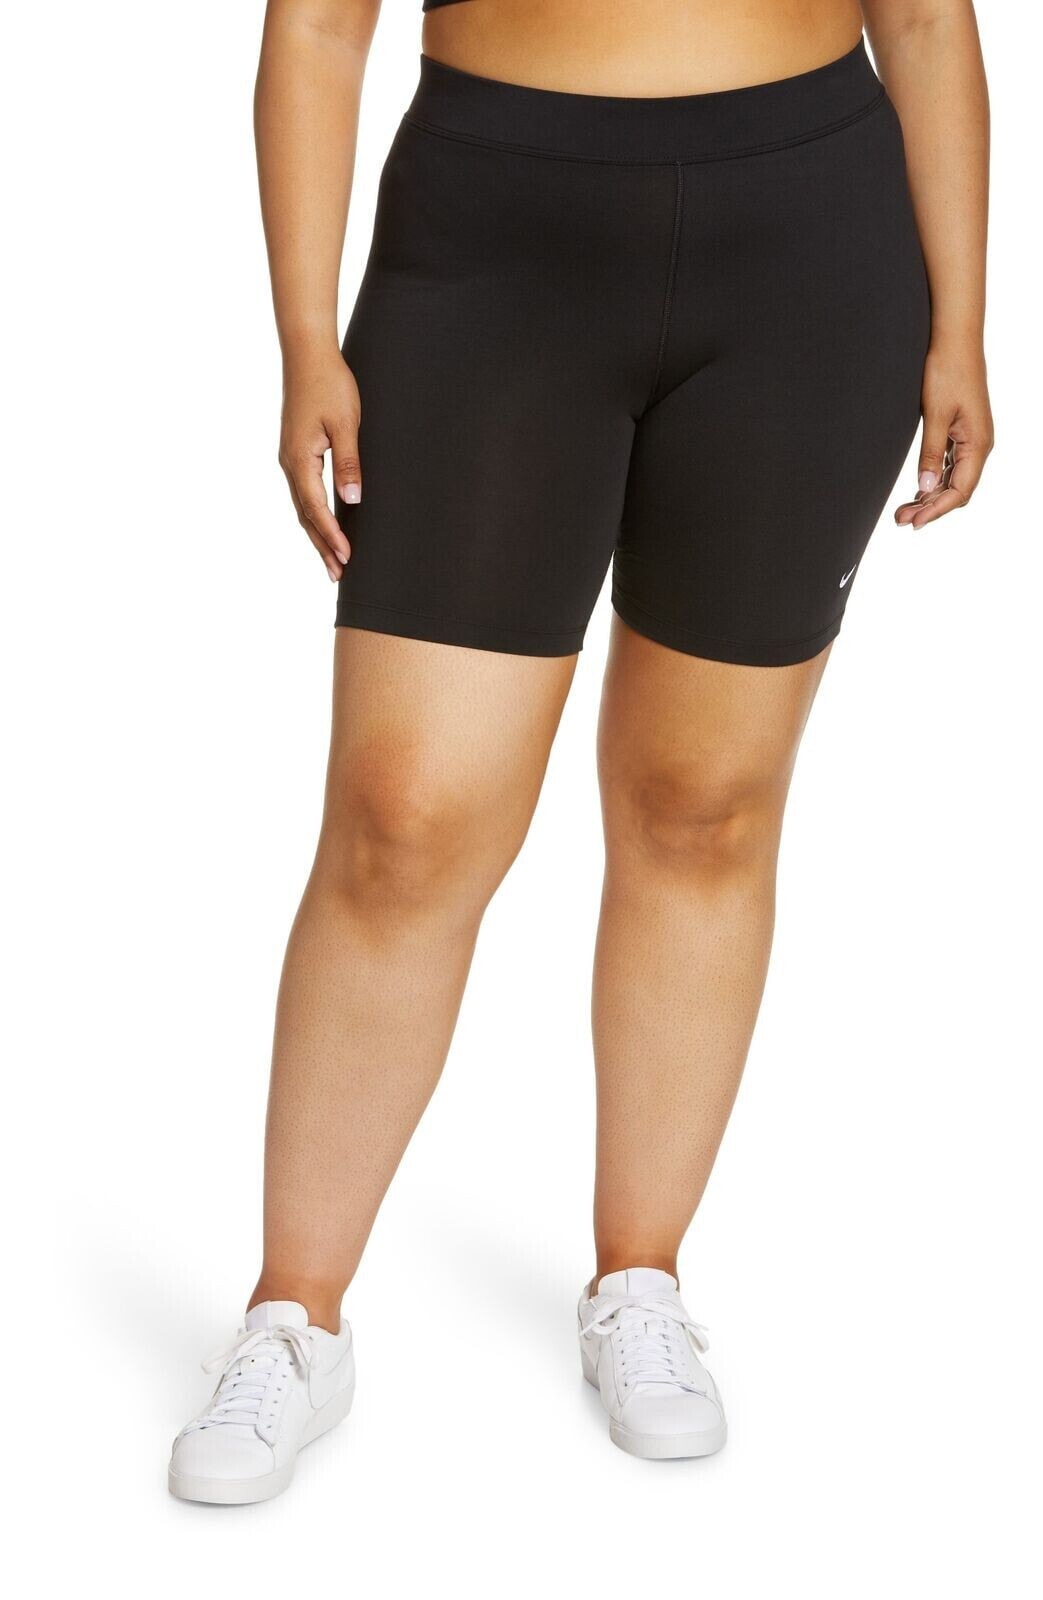 Nike 289158 Women Sportswear Eseential Bike Shorts in Black/White, Size 3X